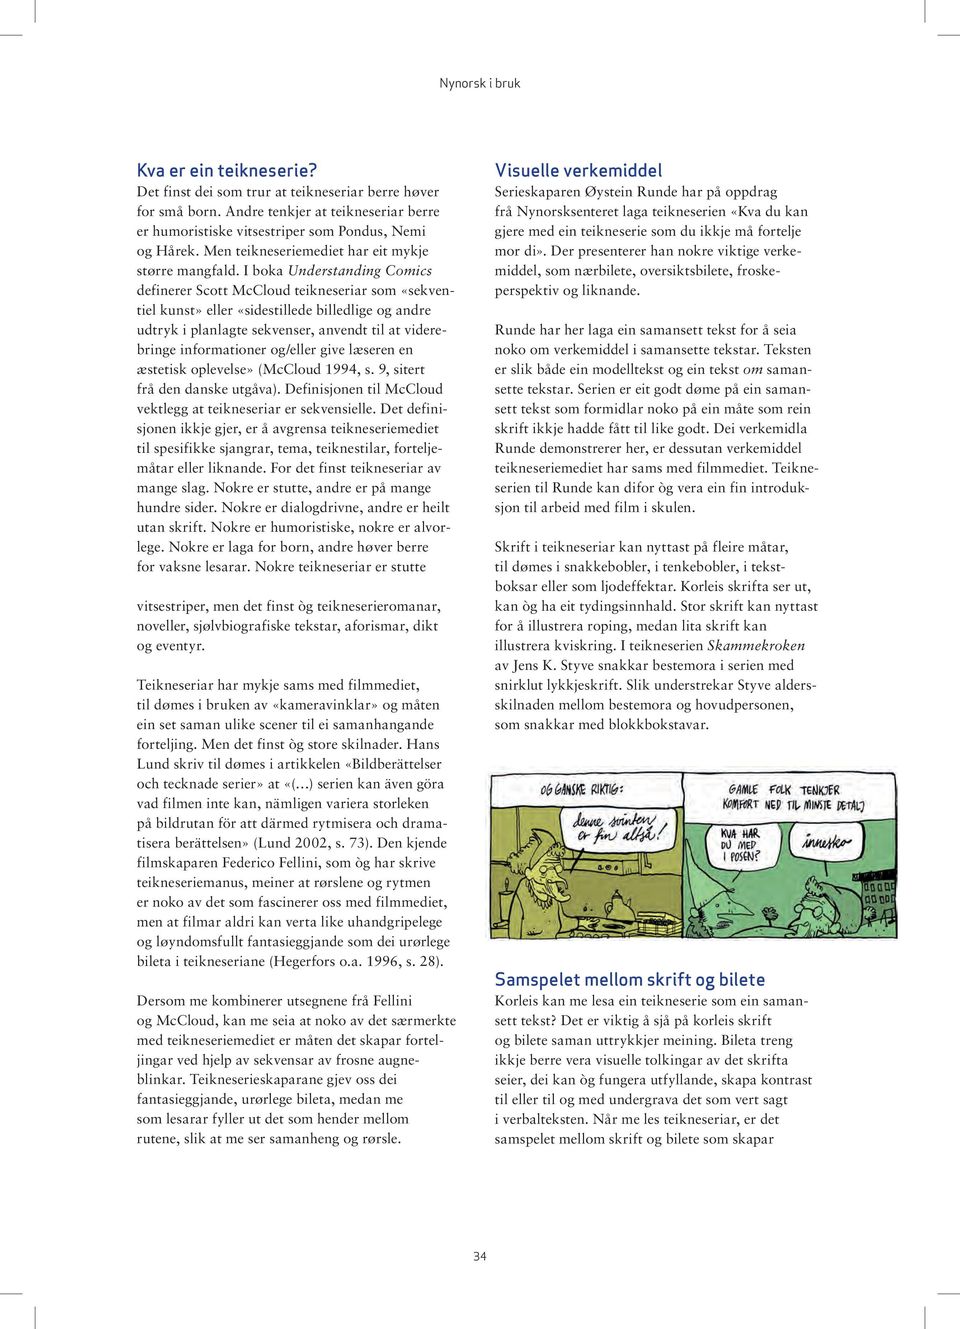 I boka Understanding Comics definerer Scott McCloud teikneseriar som «sekventiel kunst» eller «sidestillede billedlige og andre udtryk i planlagte sekvenser, anvendt til at viderebringe informationer